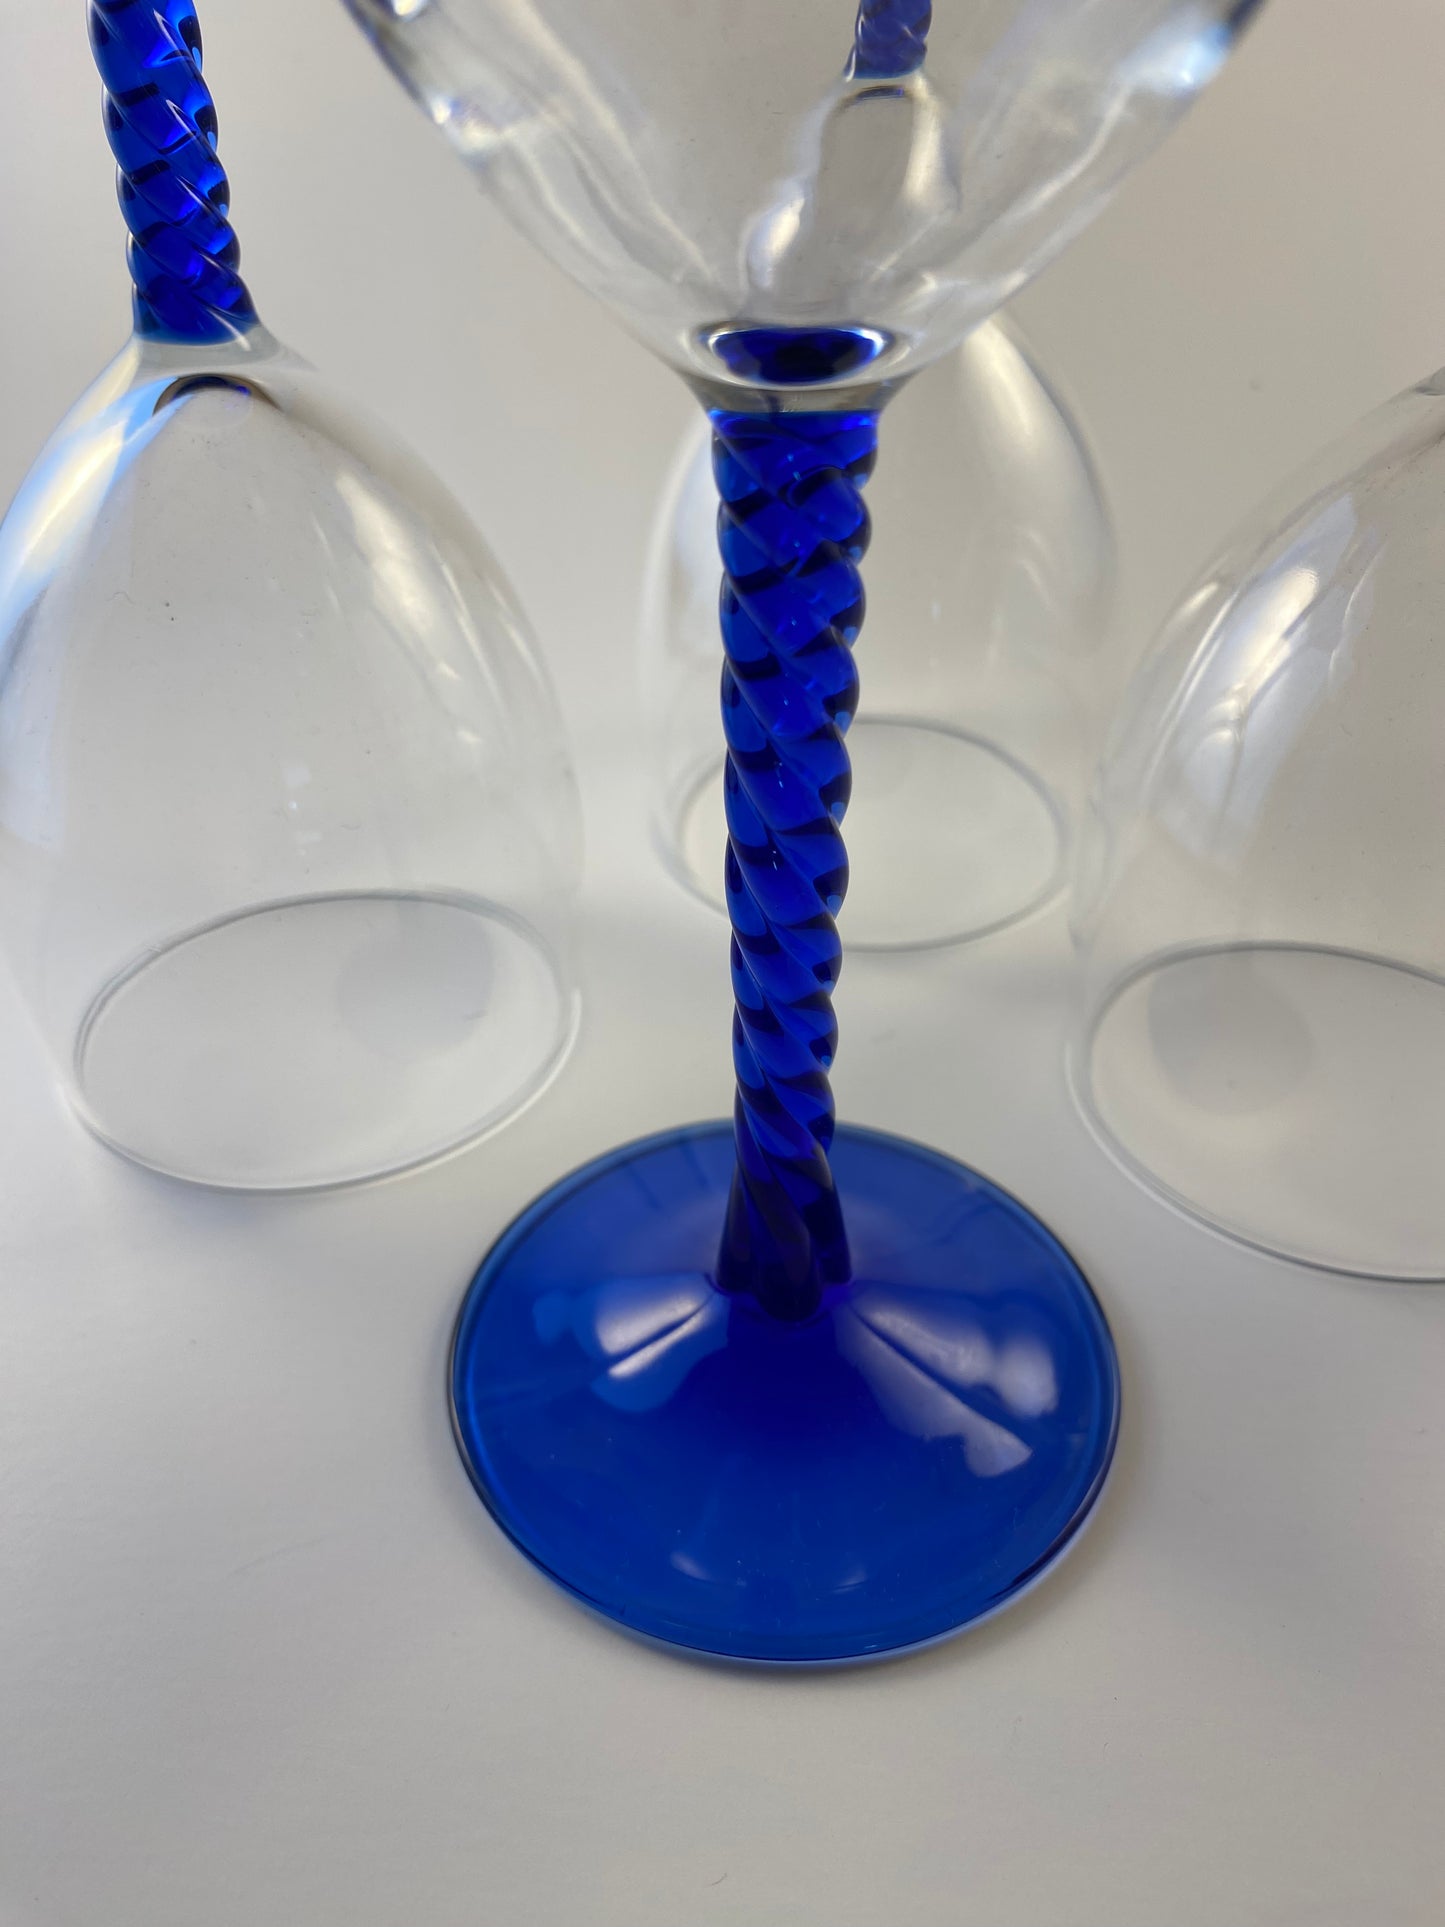 Blue Twisted Cobalt Blue Stemmed Wine glasses, set of 4